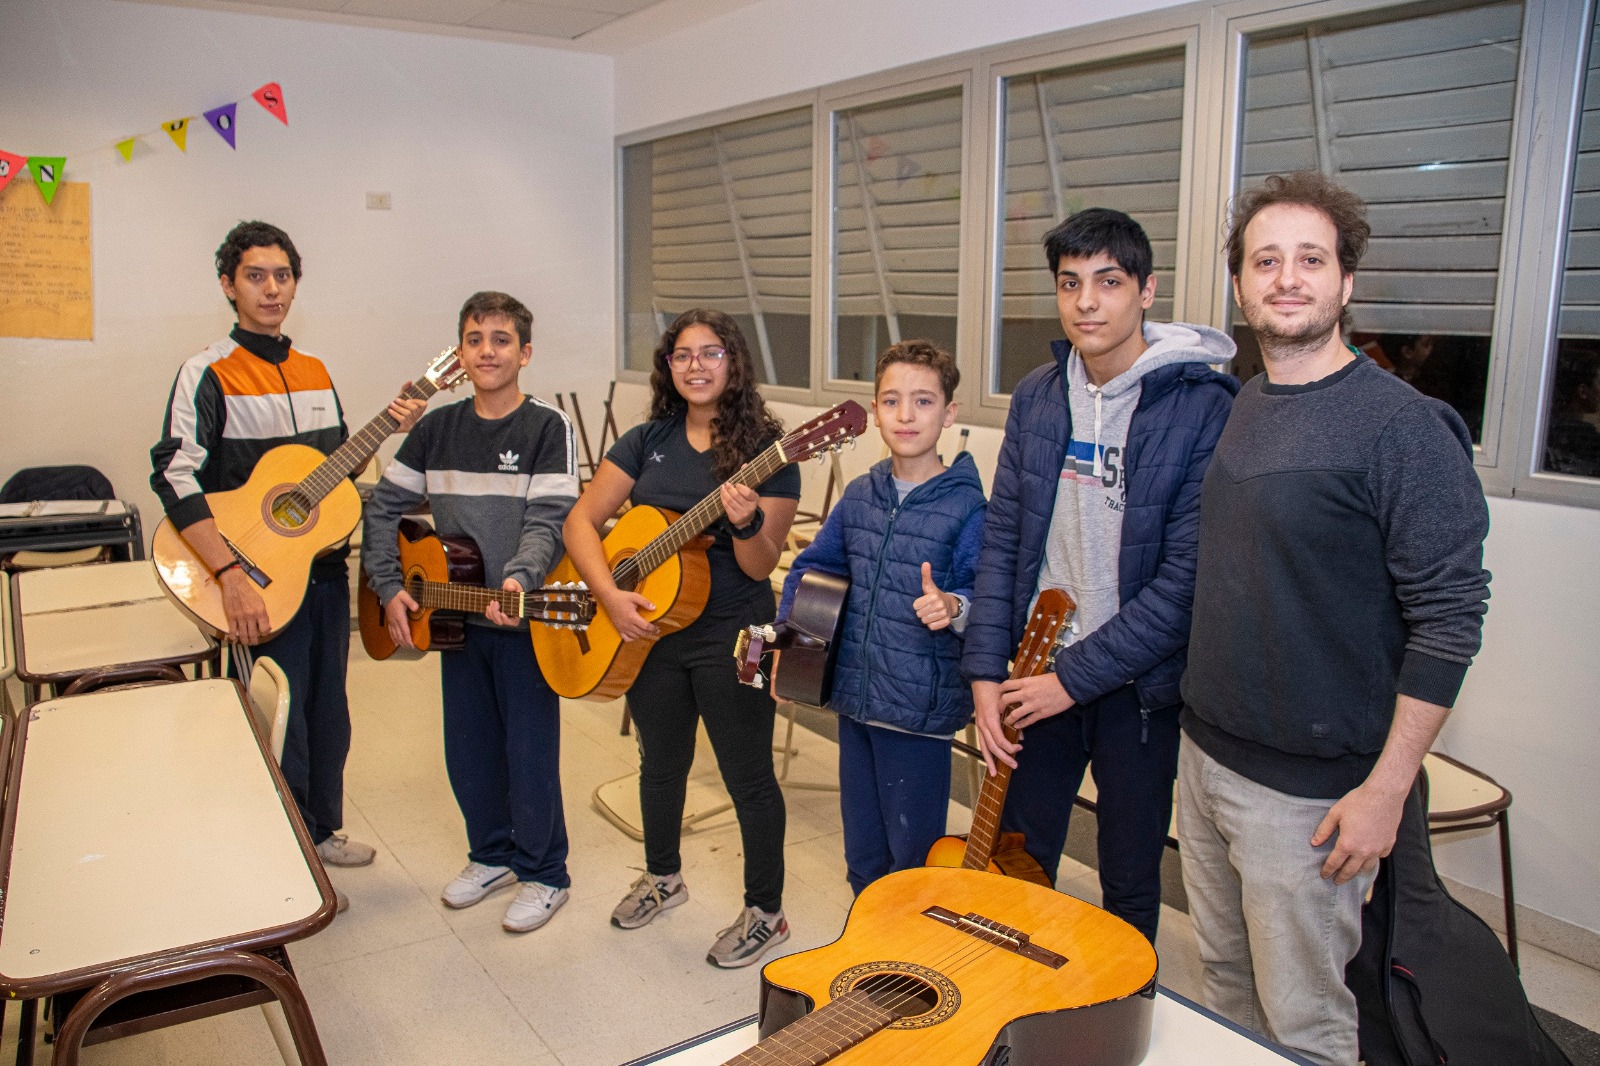 La Pampa se hace cargo de propuestas musicales infanto juveniles desfinanciadas por nación 